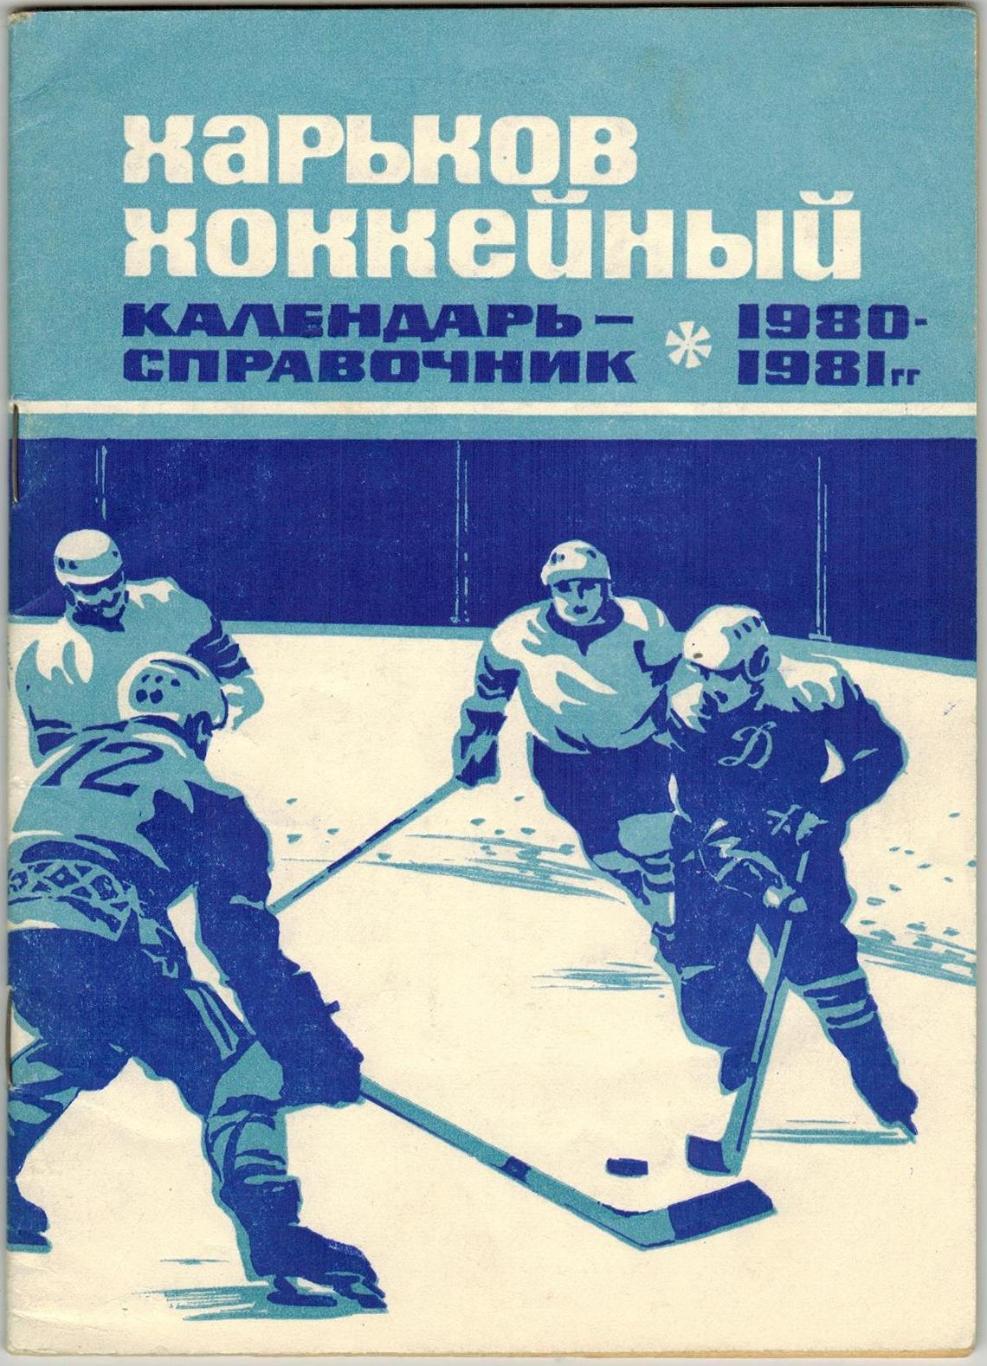 Харьков хоккейный 1980-1981